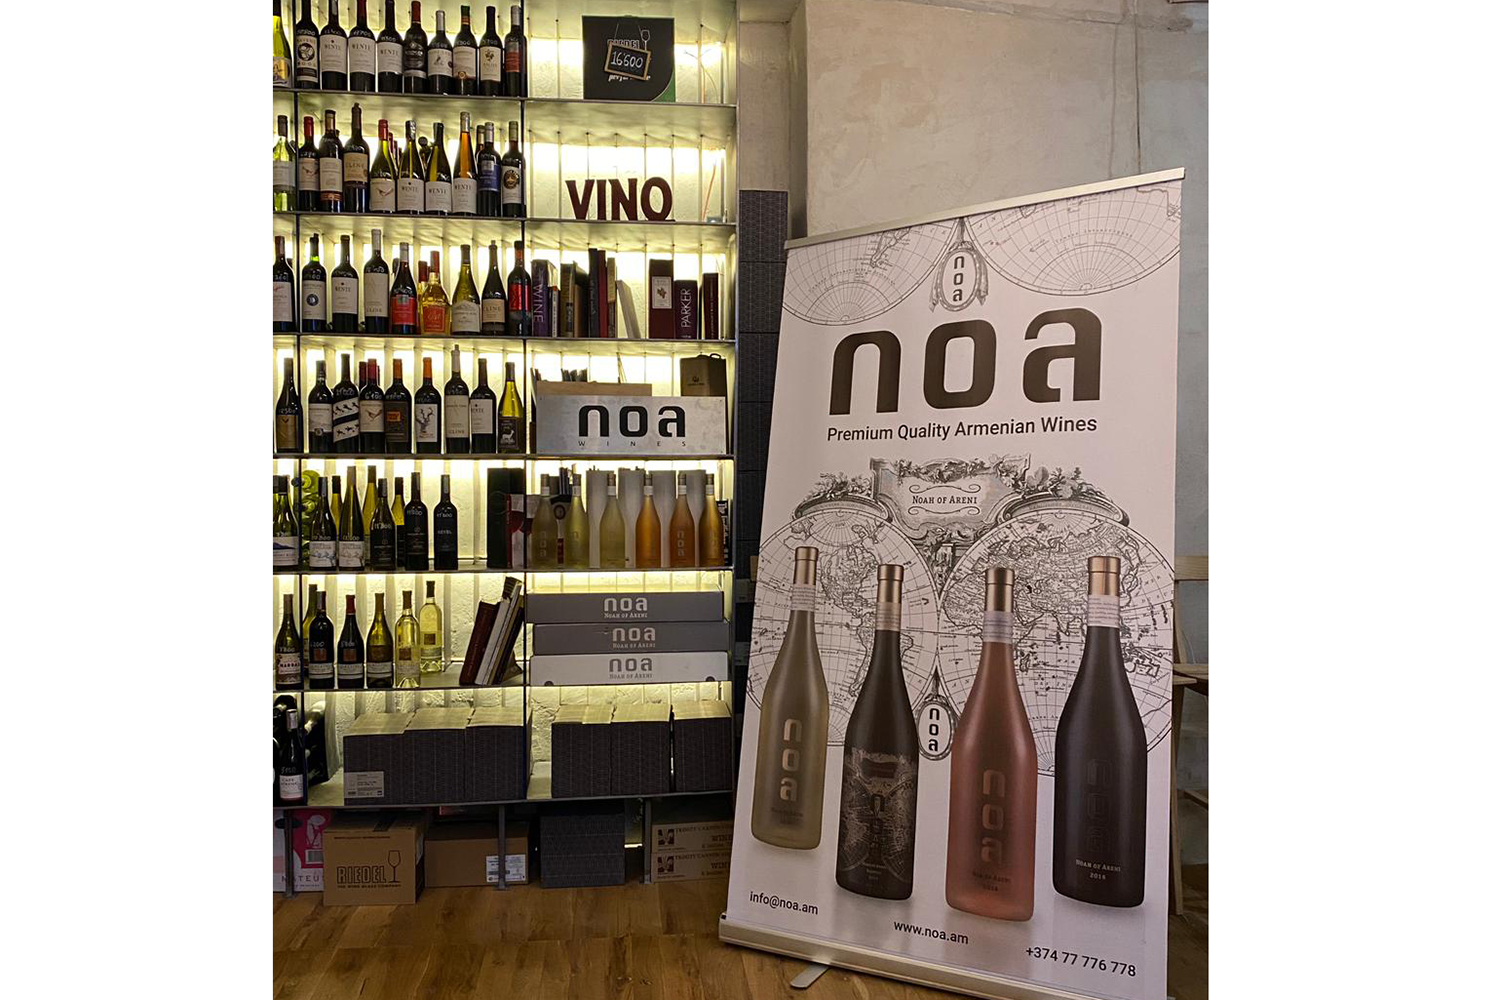 NOA Wines-ը ներկայացրել է իր առաջին քաղցր գինին՝ սպիտակ ու բնական